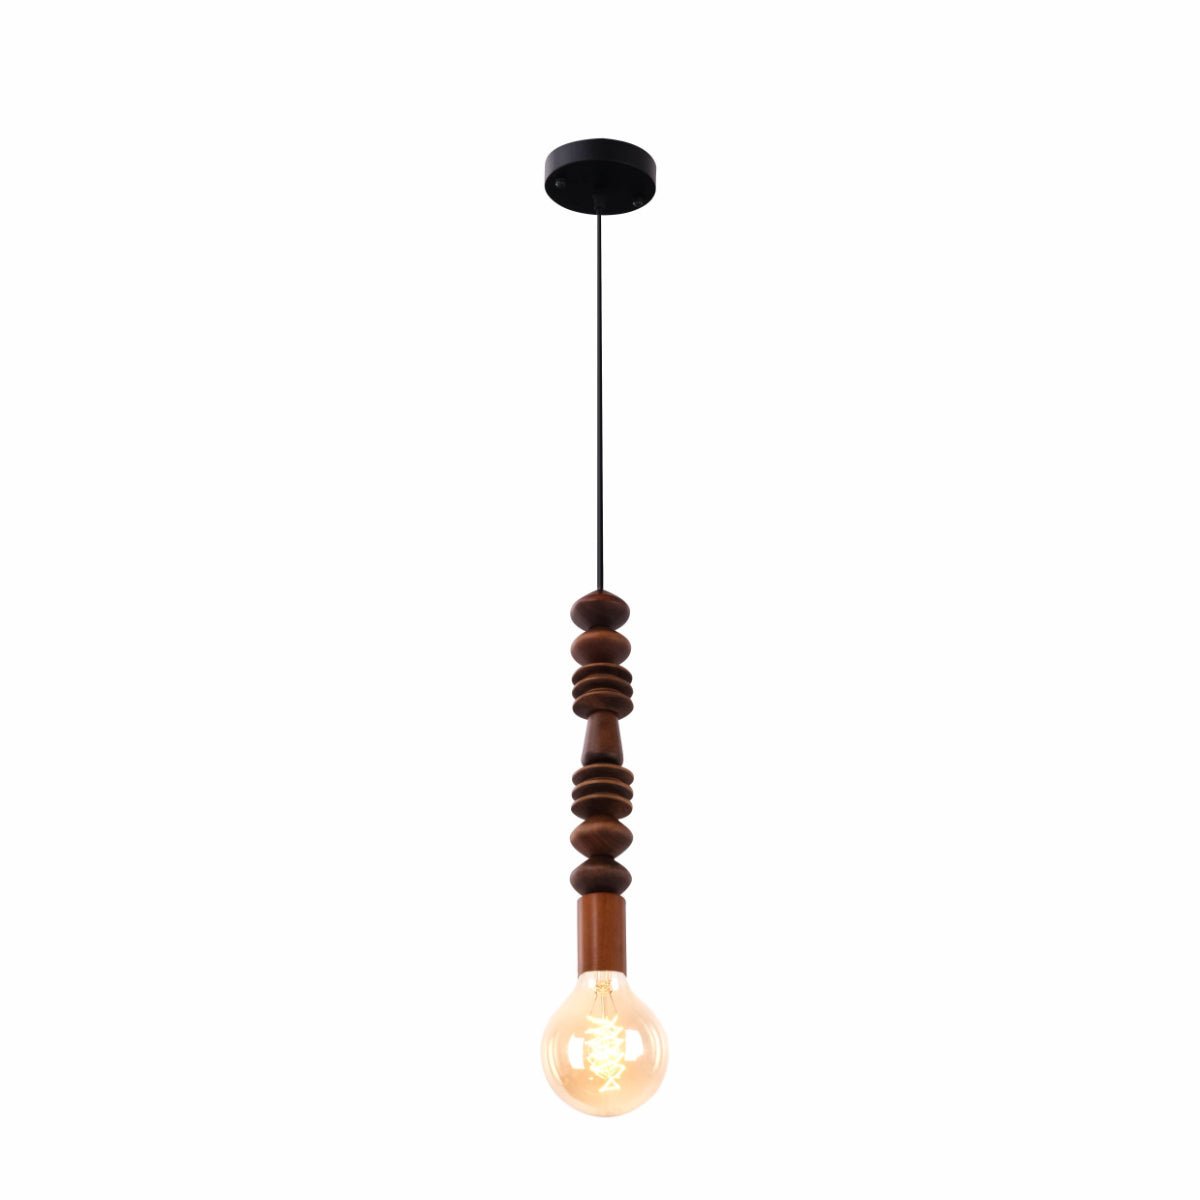 Main image of Stone Balance 3 Wood Short Stack Pendant Ceiling Light with E27 | TEKLED 150-17904